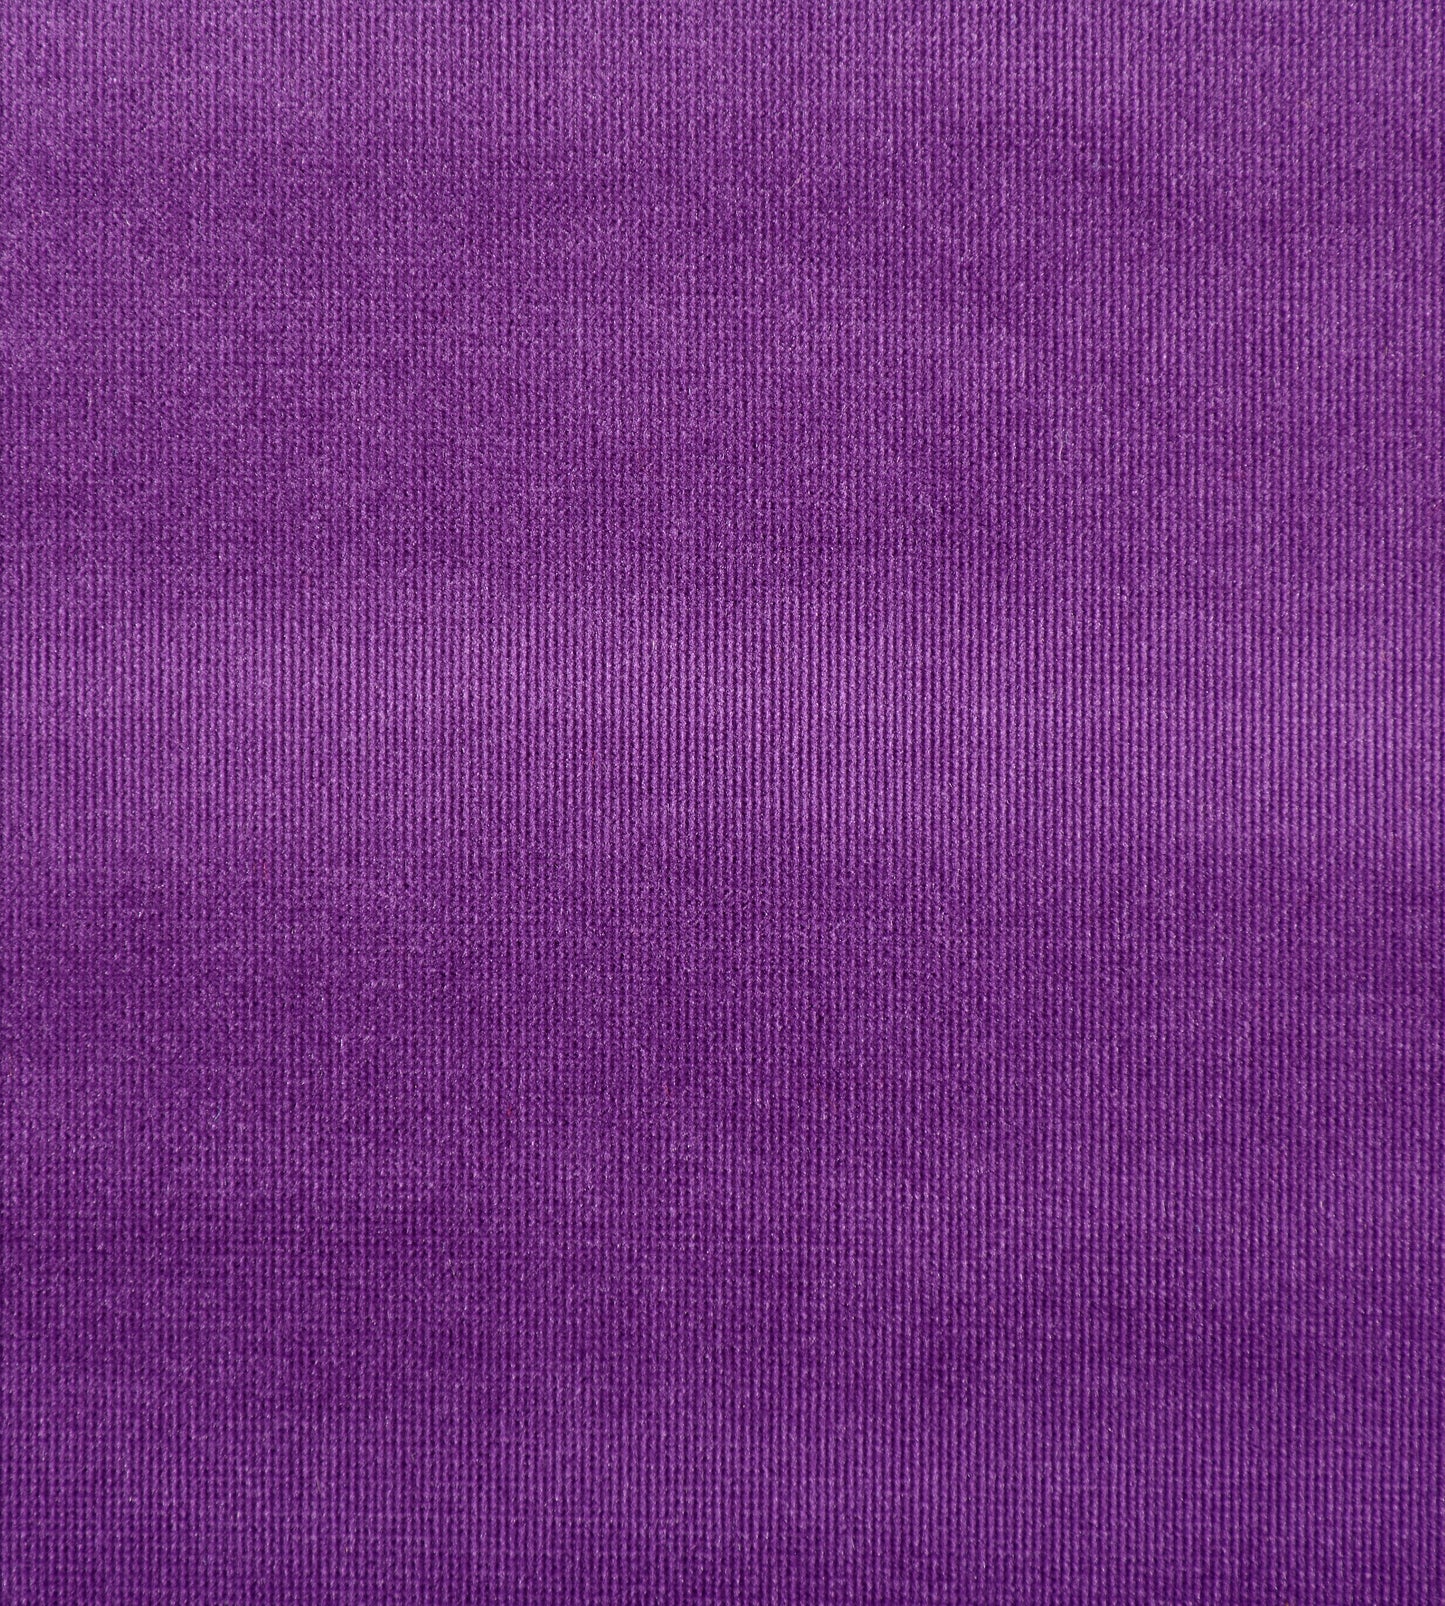 Purchase Old World Weavers Fabric Pattern# VP 0855GLAM, Glamour Velvet Violet 1